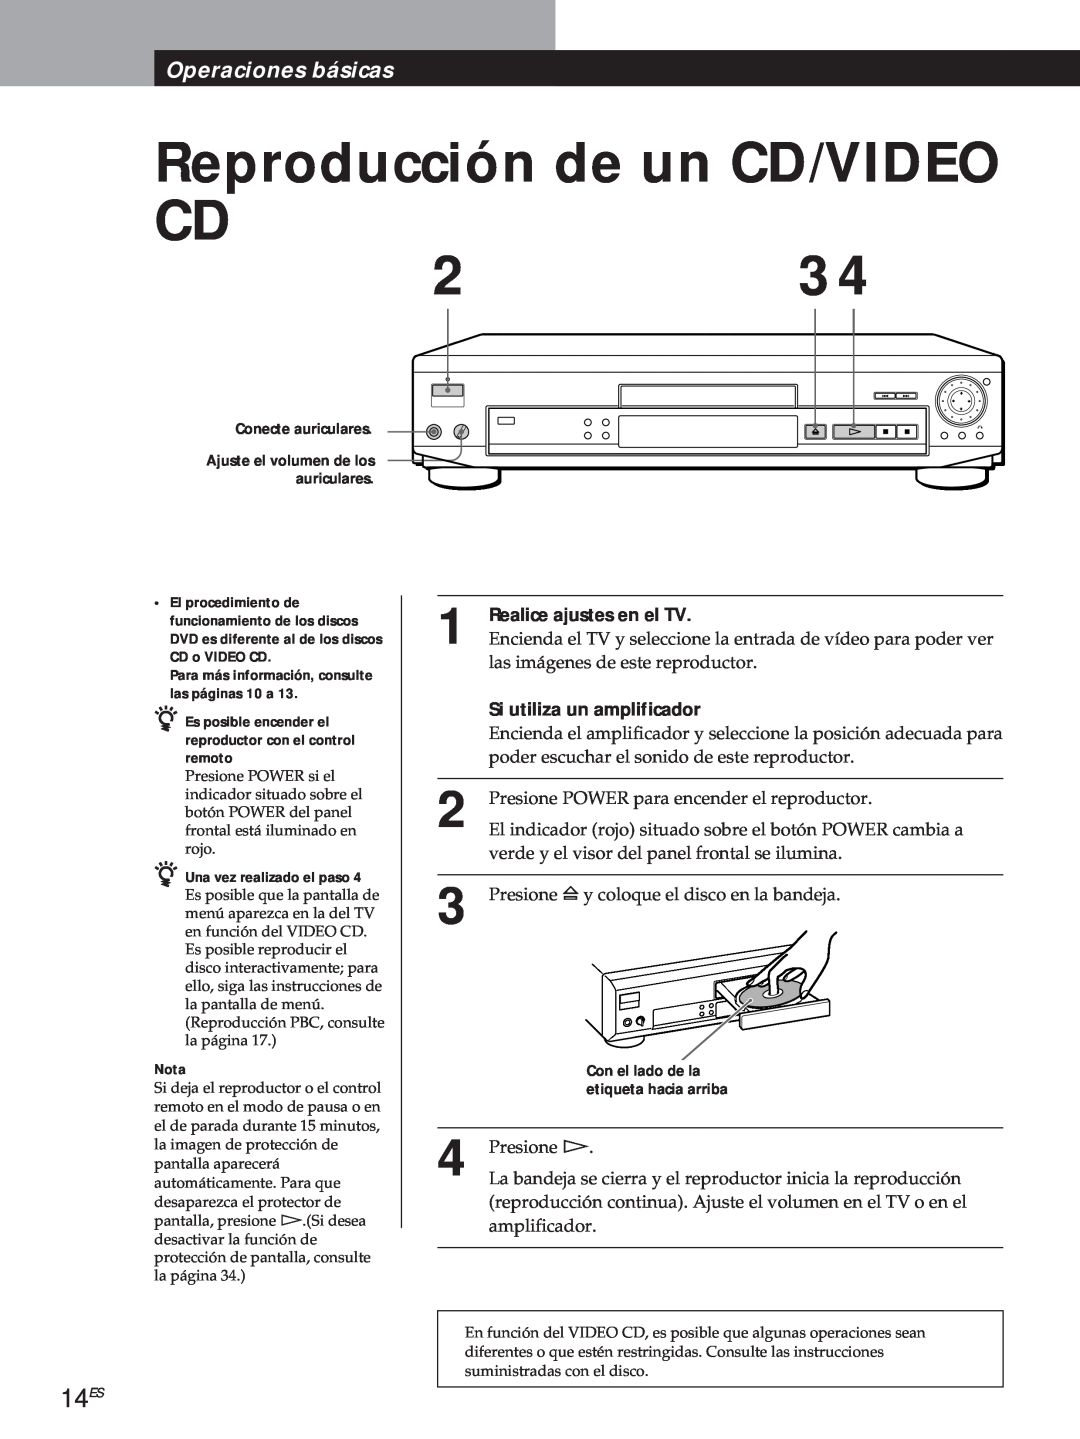 Sony DVP-S500D Reproducción de un CD/VIDEO, 14ES, La bandeja se cierra y el reproductor inicia la reproducción, Presione á 